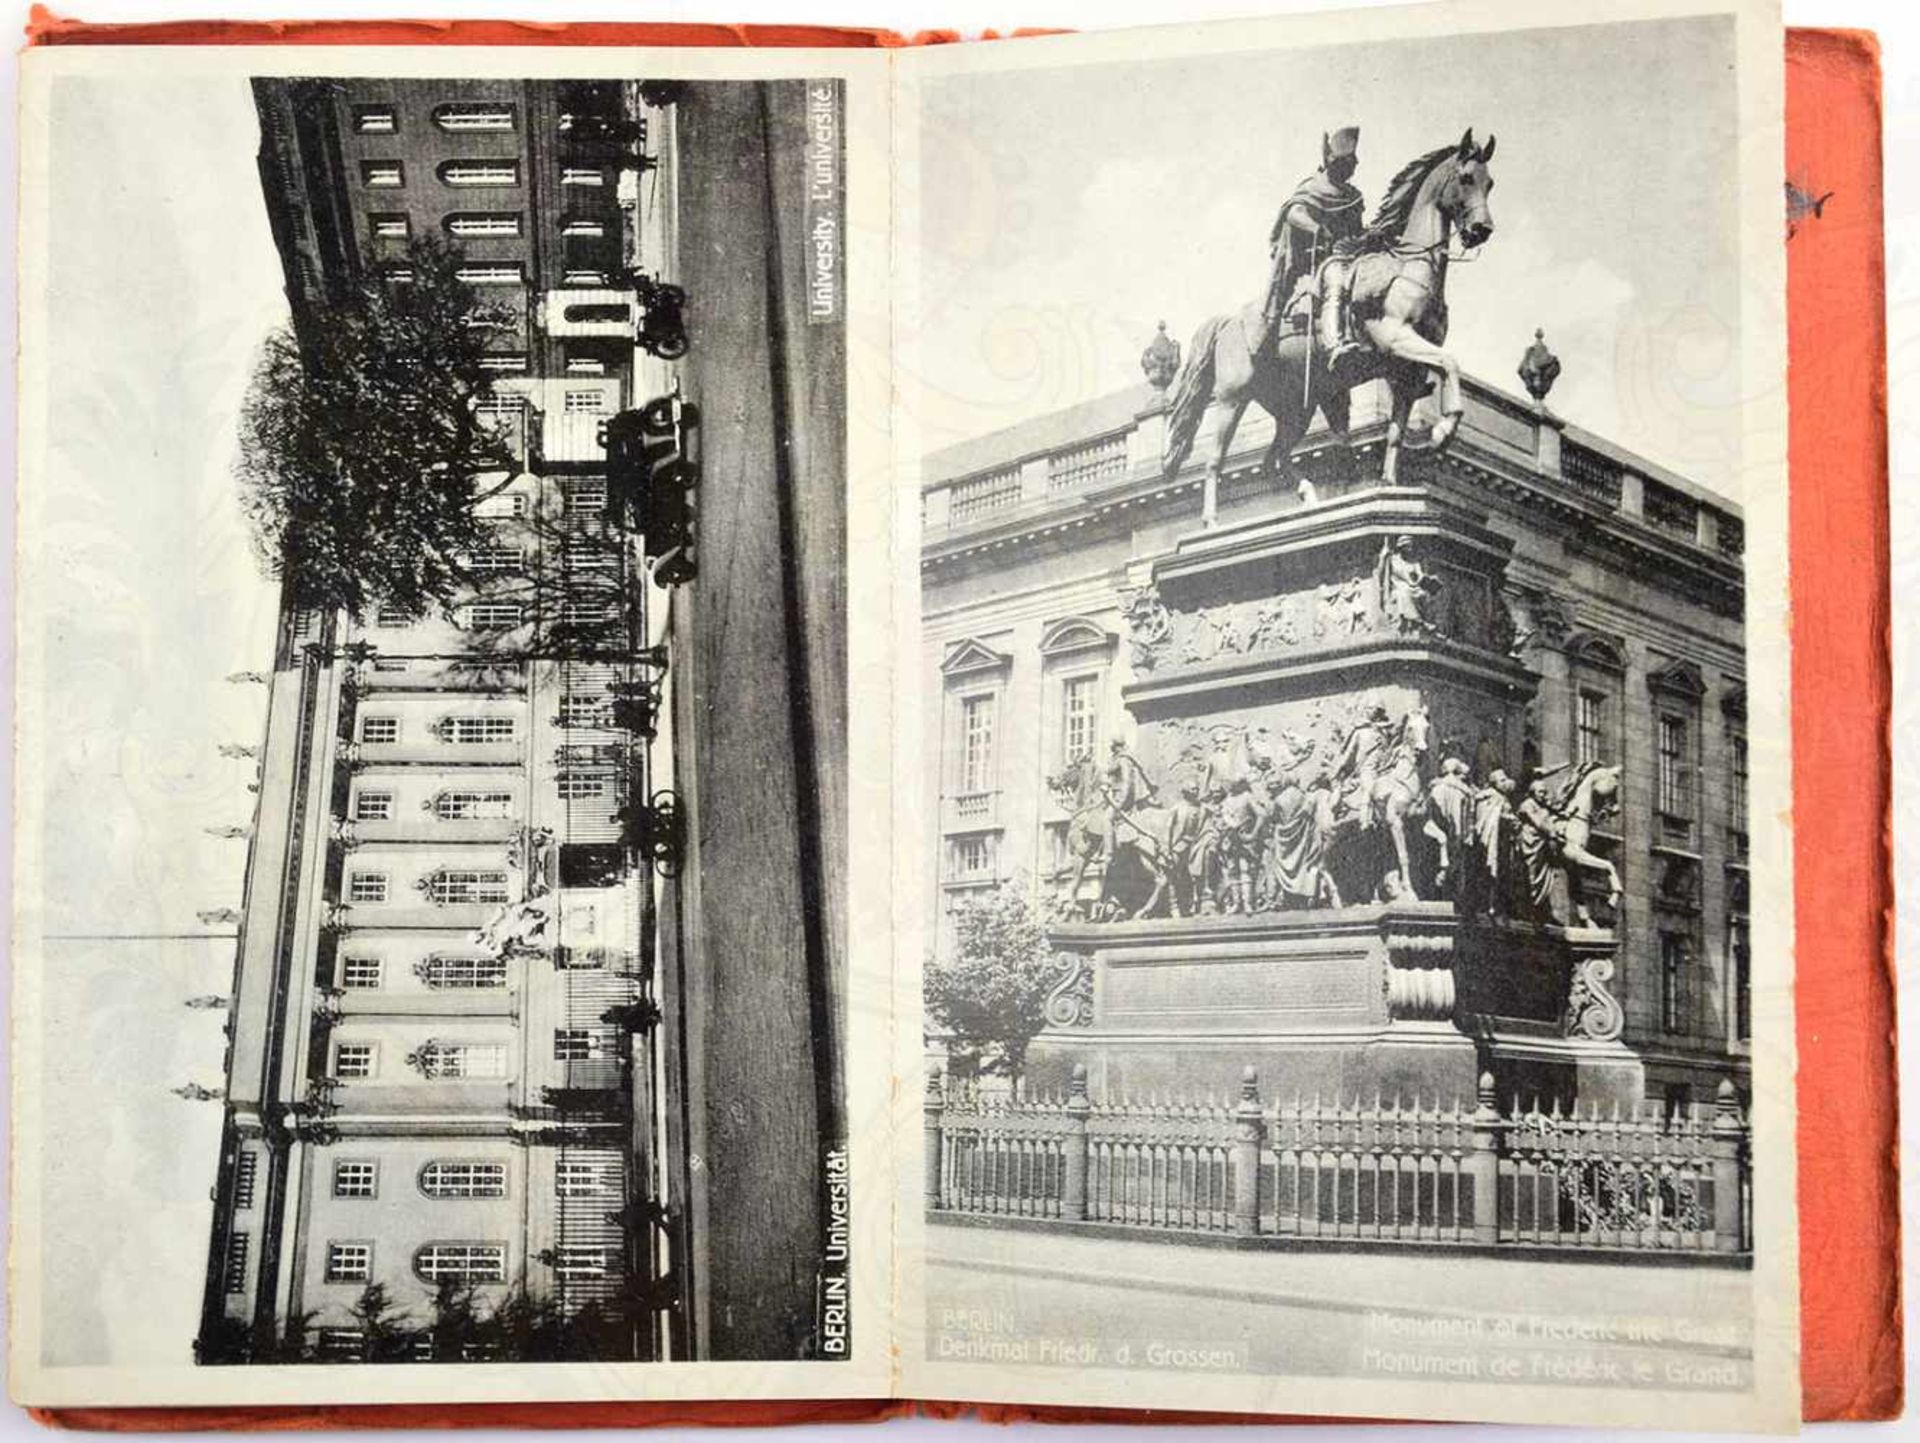 LEPORELLO BERLIN, 16 Lichtdruck-AK, um 1930, Reichskanzlei, Reichswehr vor dem Ehrenmal, - Image 2 of 2